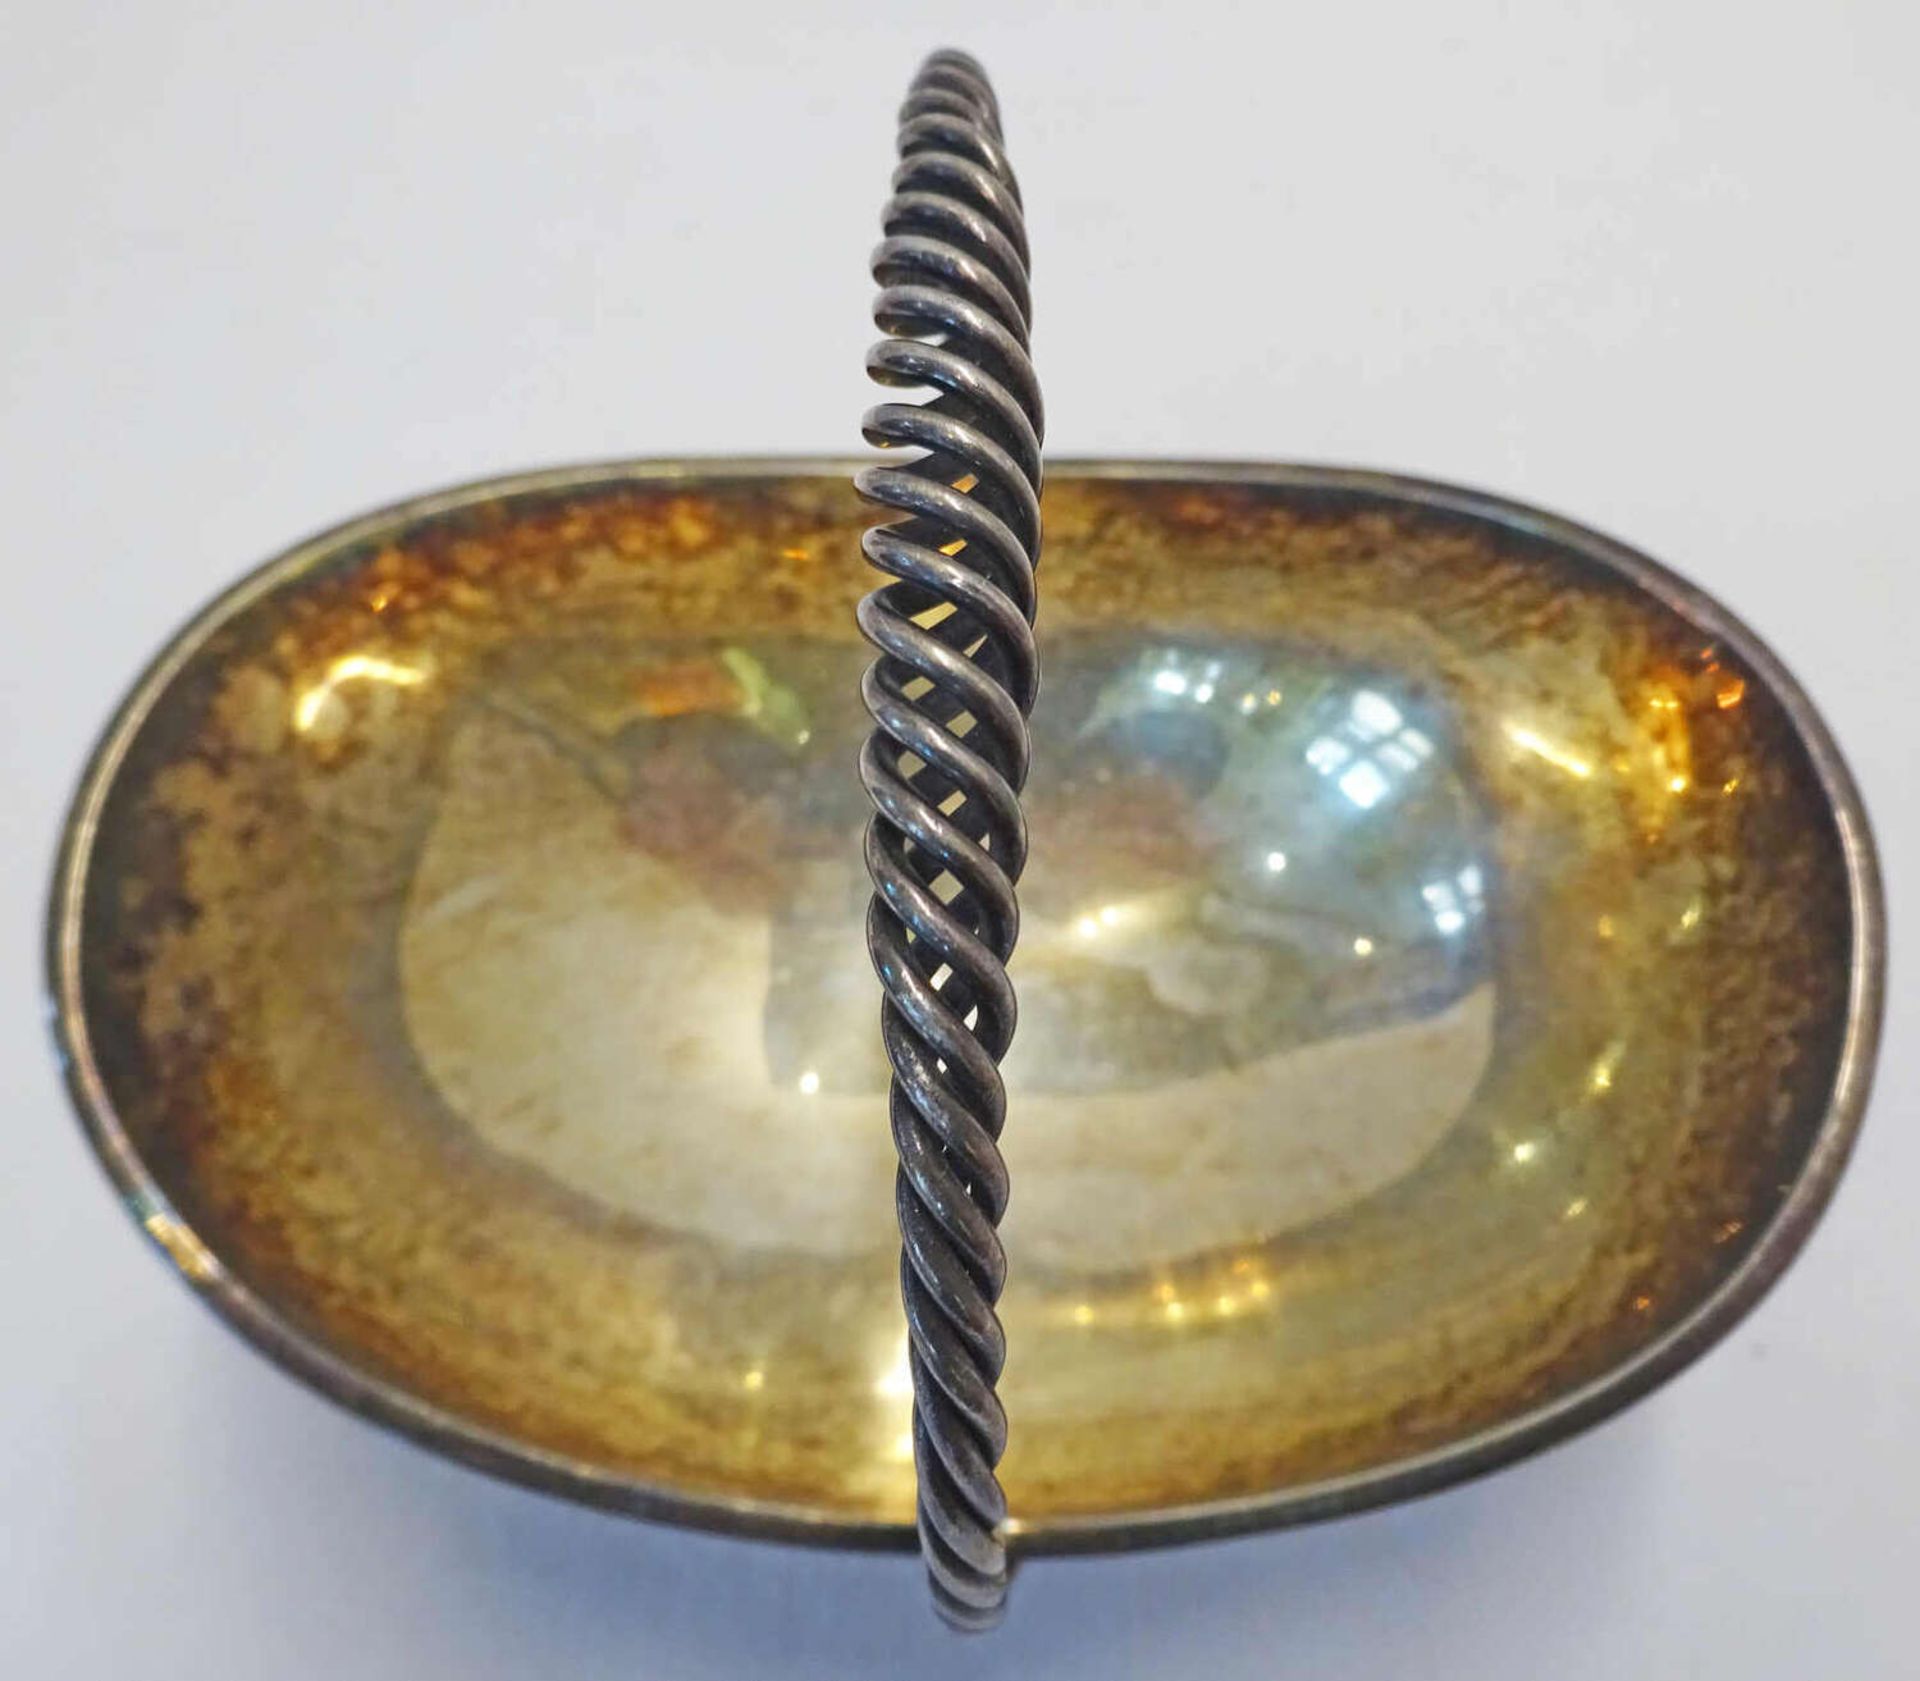 Silber Henkelschale mit Sterling Punze, guter Zustand. Höhe ca. 10 cmSilver handle bowl with sterl - Bild 2 aus 3